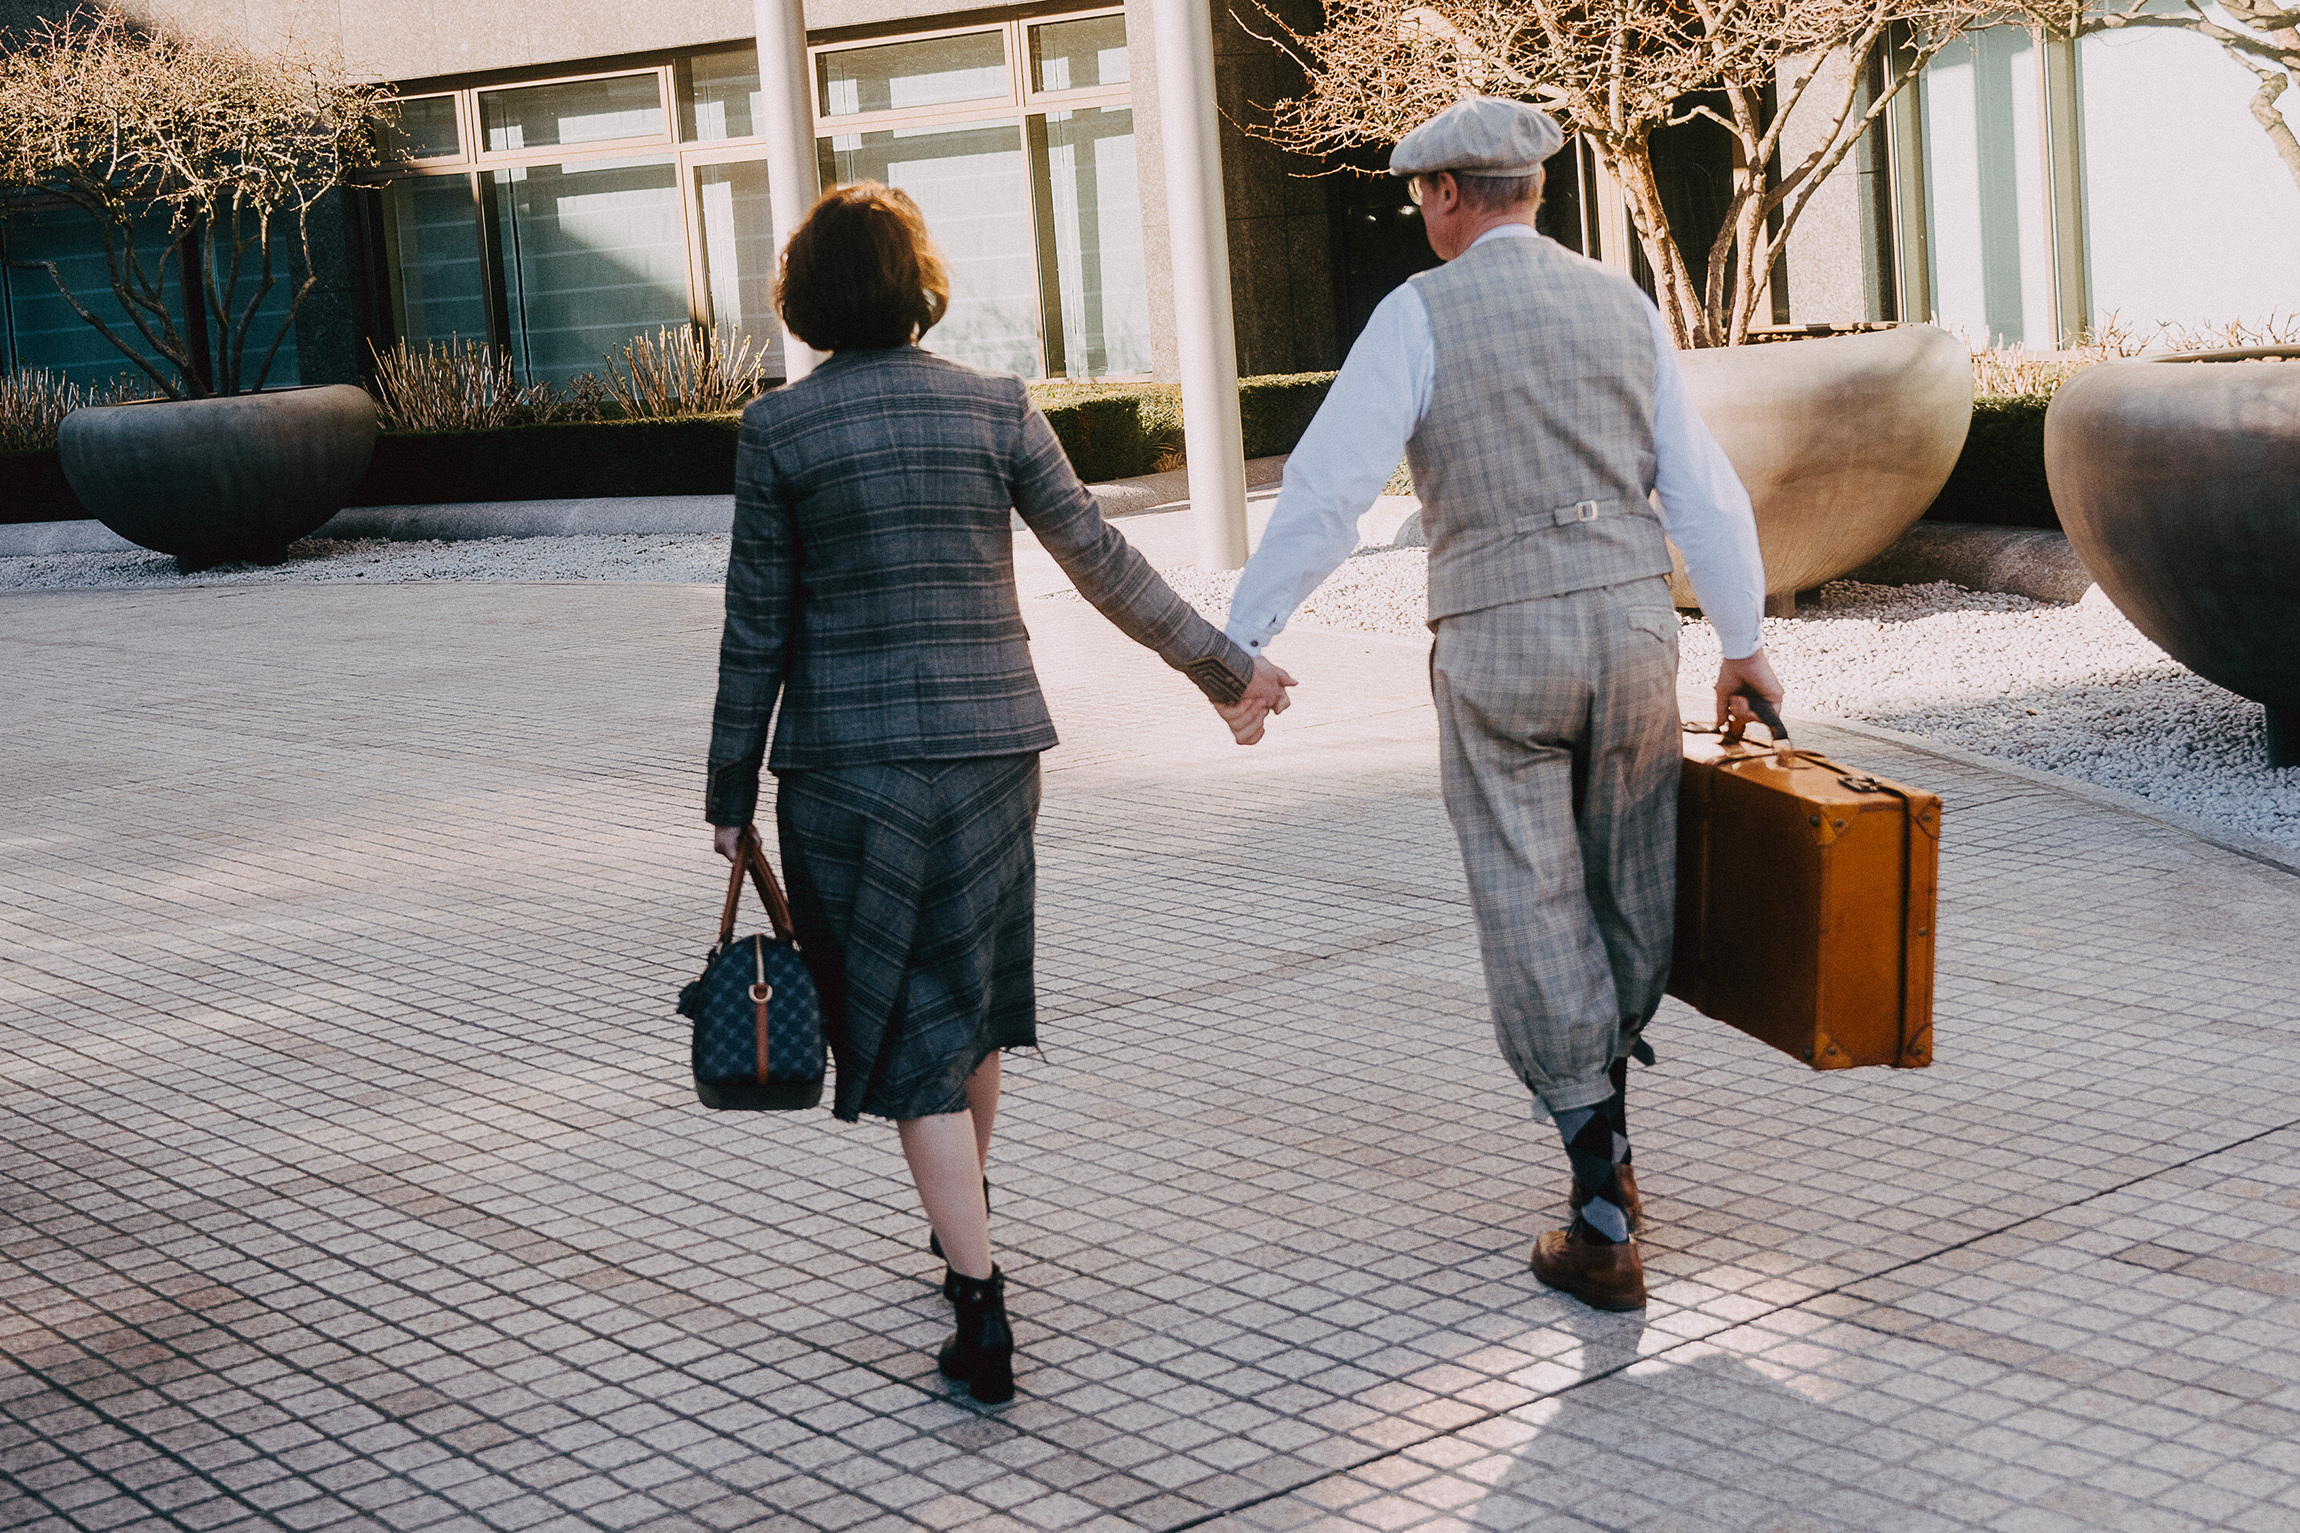 Foto von zwei Personen in der Rückansicht. Die beiden laufen Hand in Hand,mit Koffern in der anderen Hand, in historischen Outfits auf ein Gebäude zu.